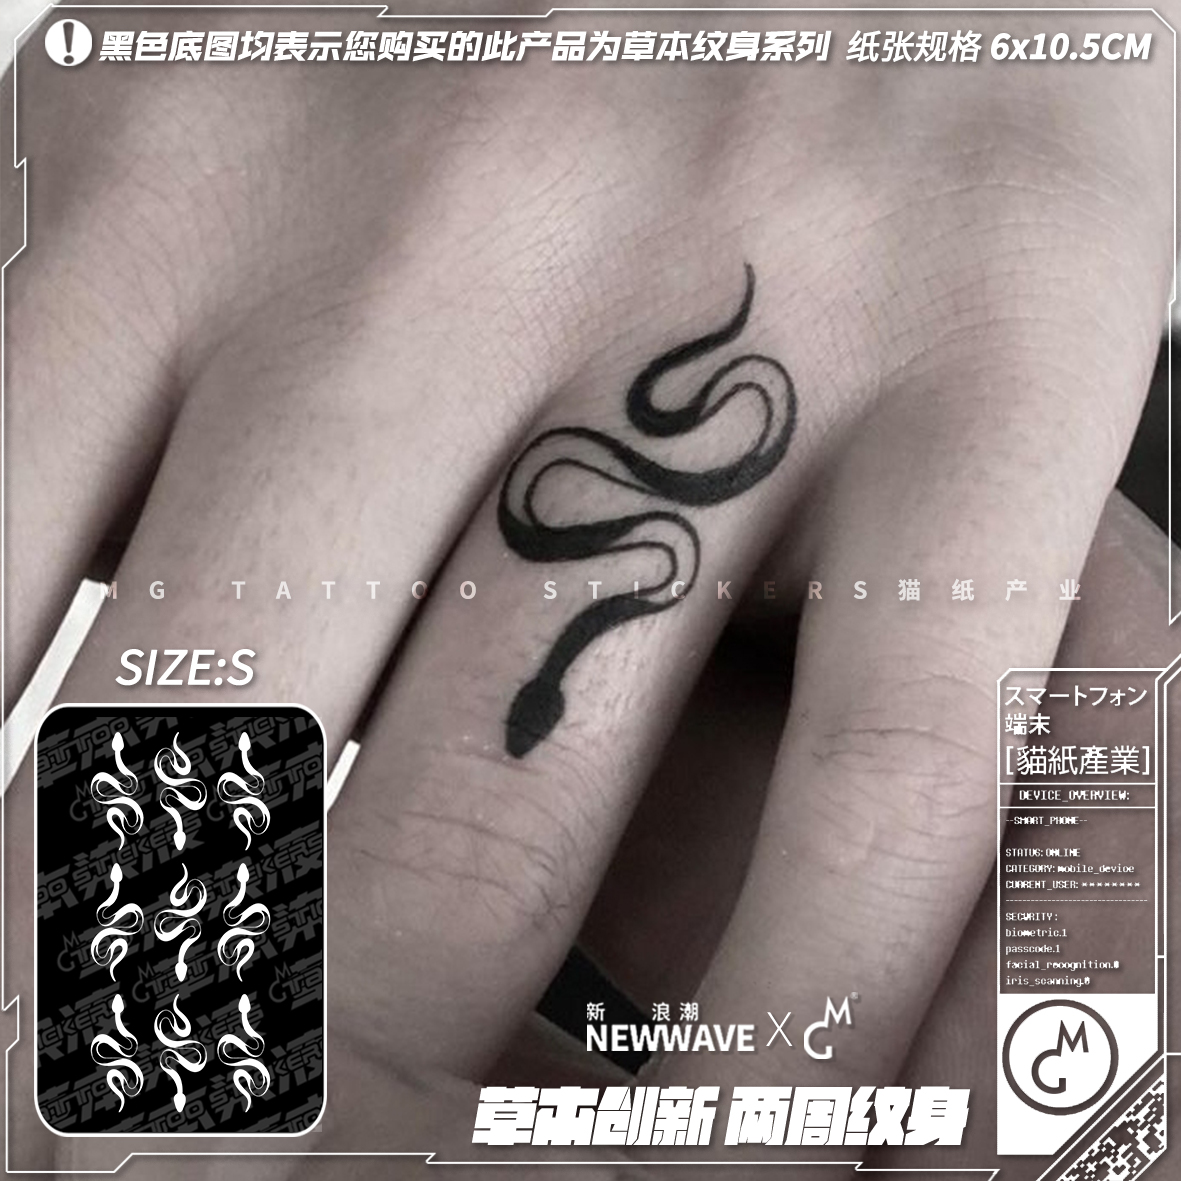 MG tattoo 草本染液暗黑系蛇形图案手指脚踝耳朵小图案草本纹身贴